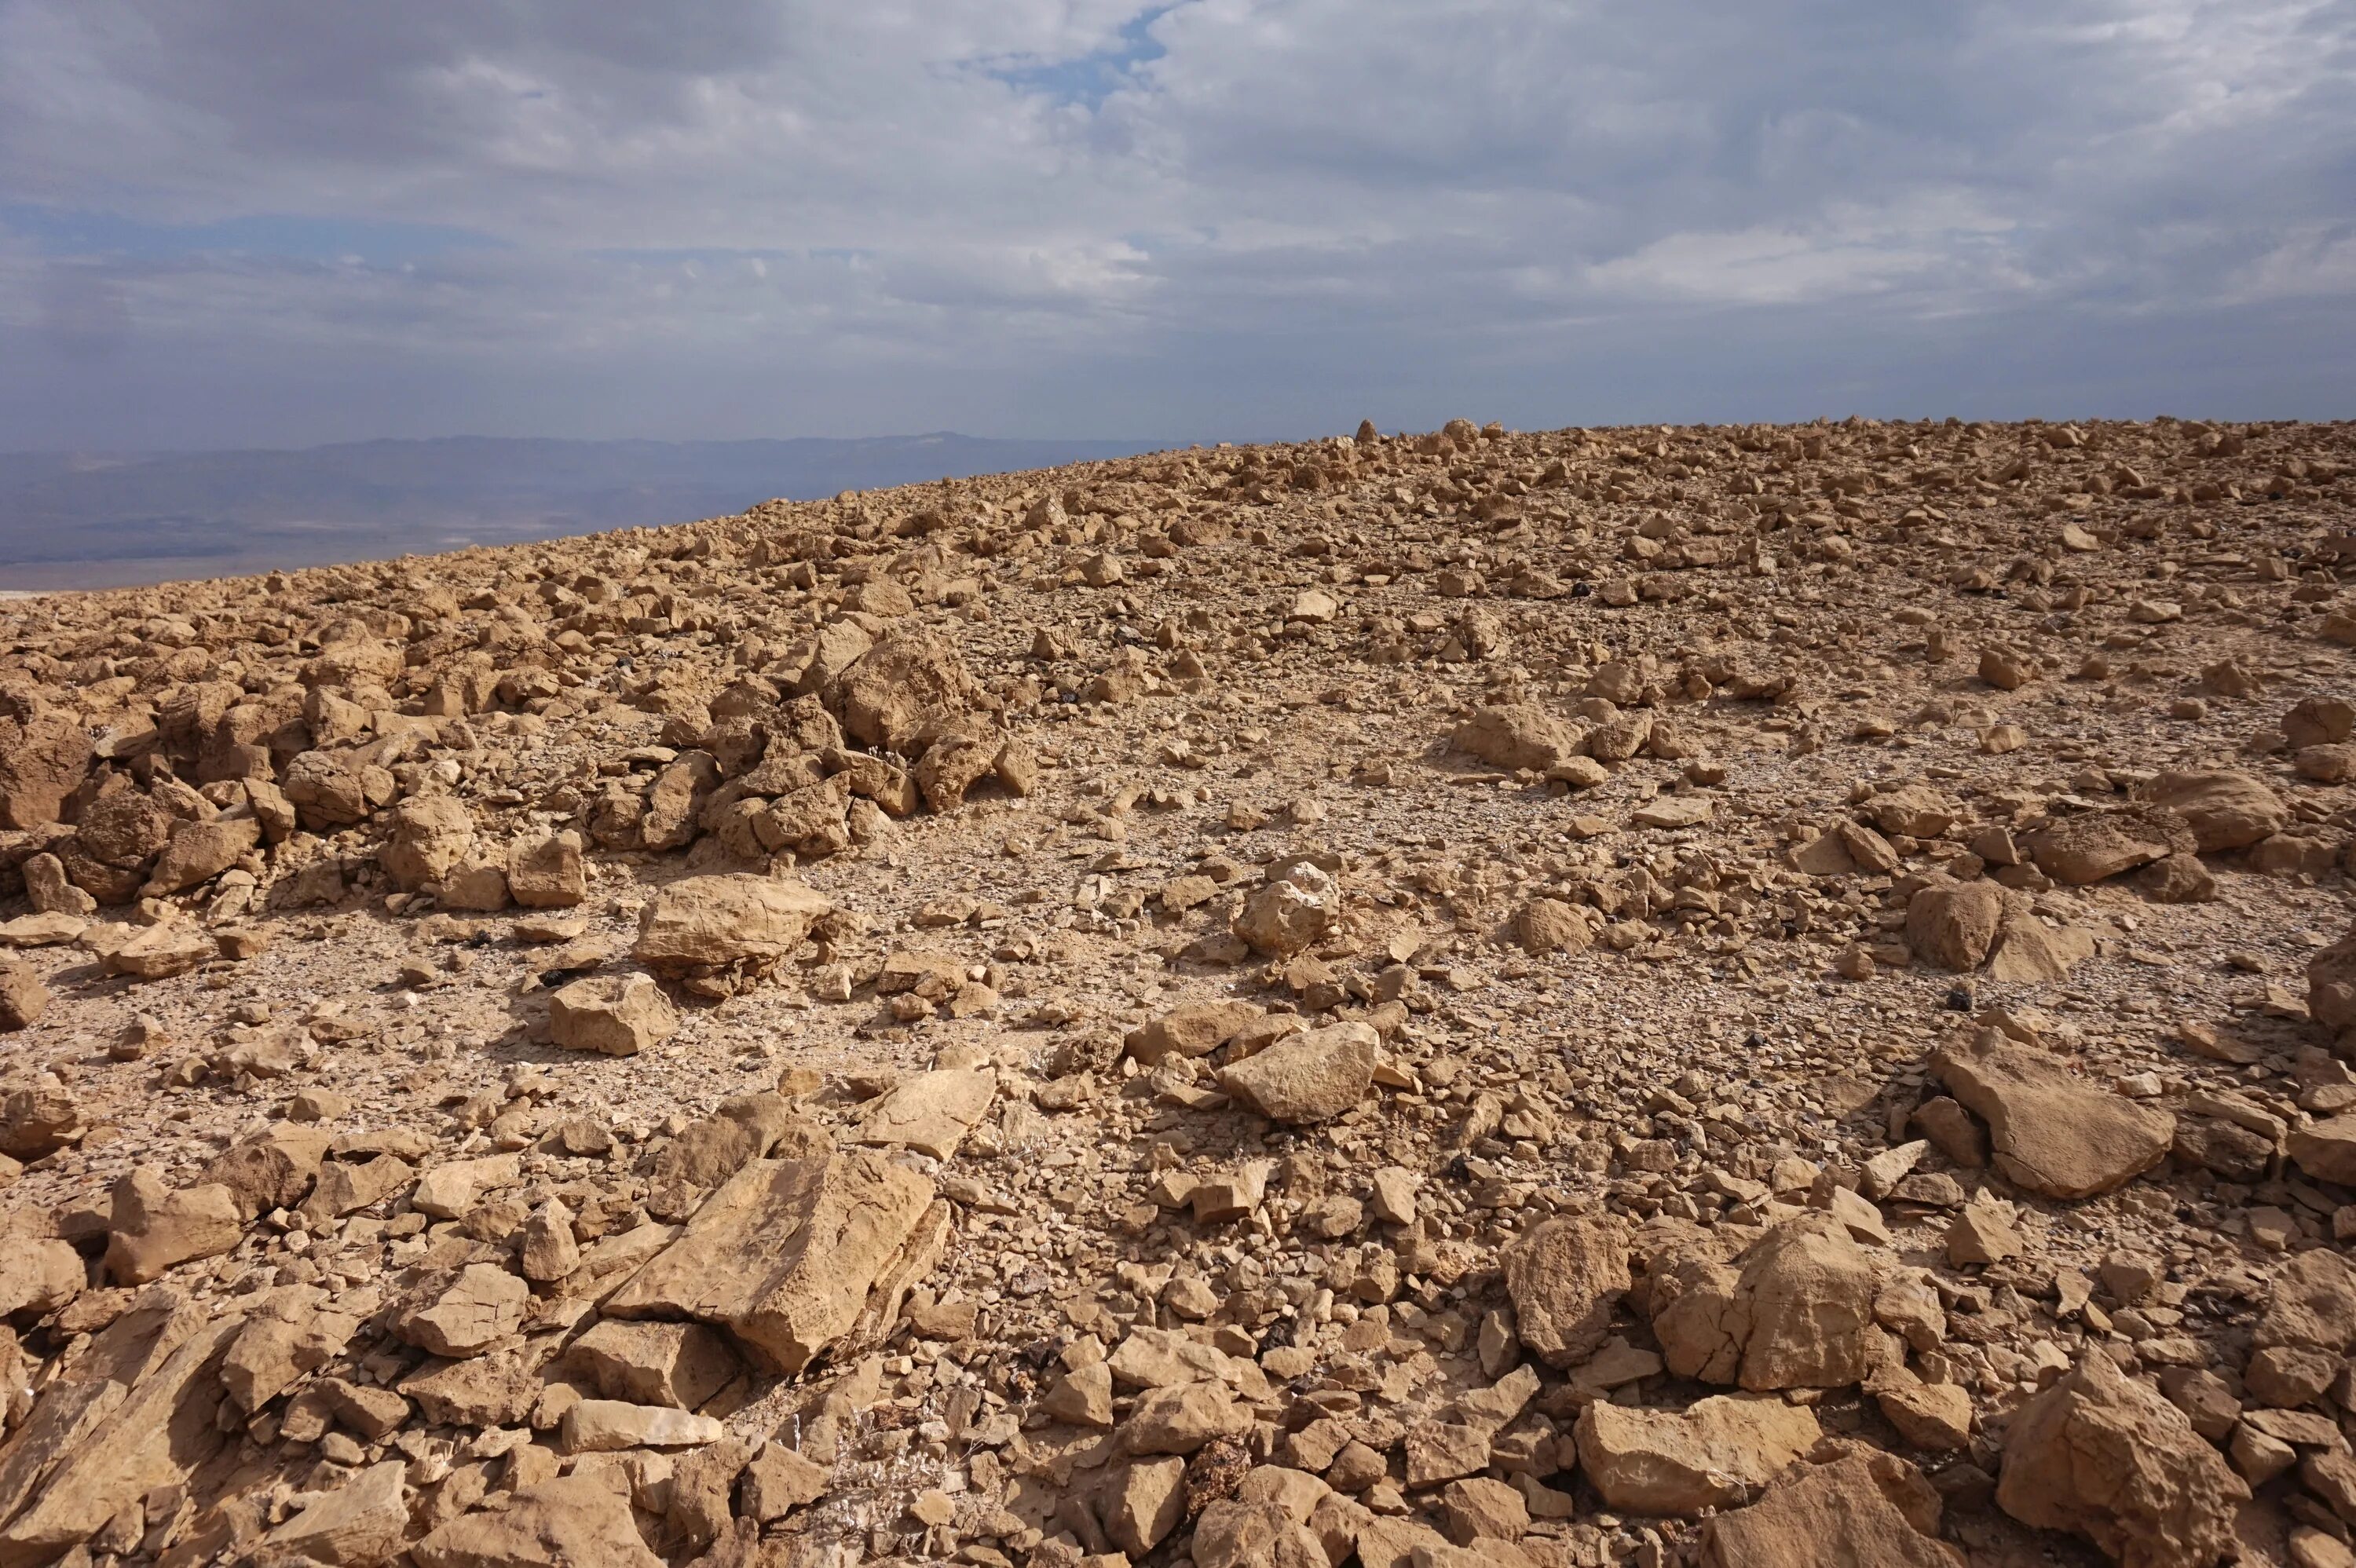 Ground stone. Каменистый каменистые пустыни. Каменистая пустыня в Израиле. Песчано-галечные пустыни. Песчано каменистая пустыня.